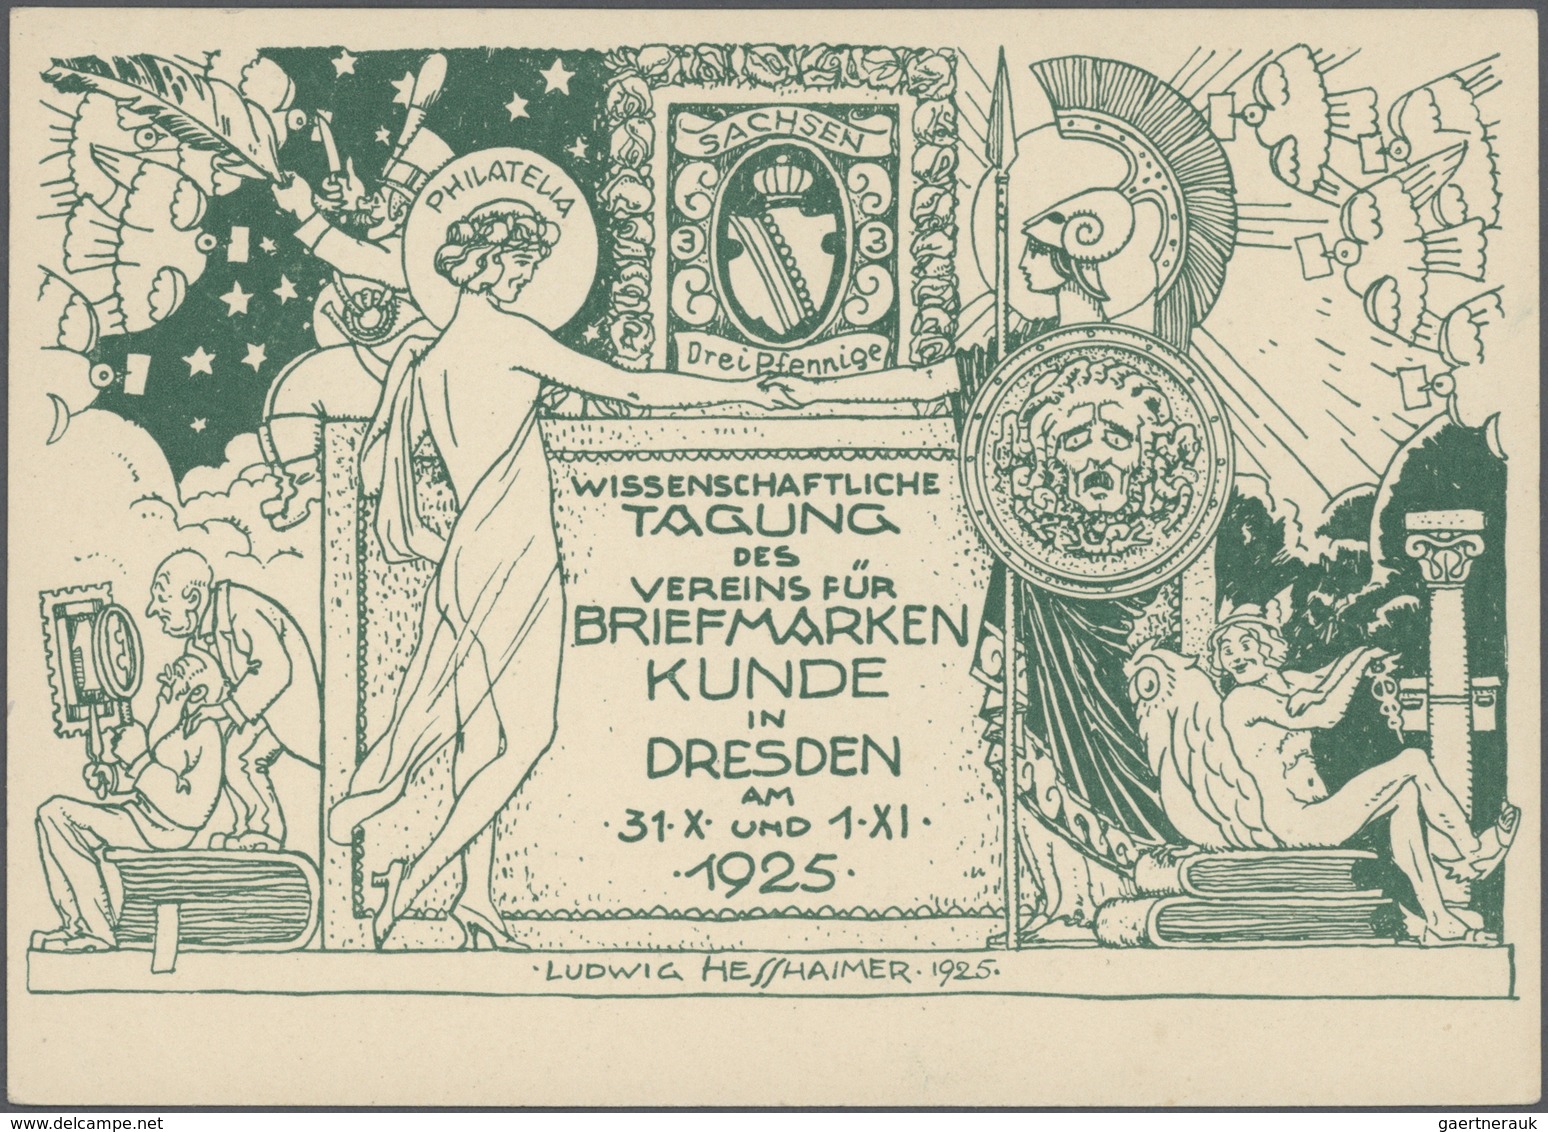 Deutsches Reich - Privatganzsachen: 1910/1932, umfangreiche Sammlung "Privatganzsachenkarten" mit ca